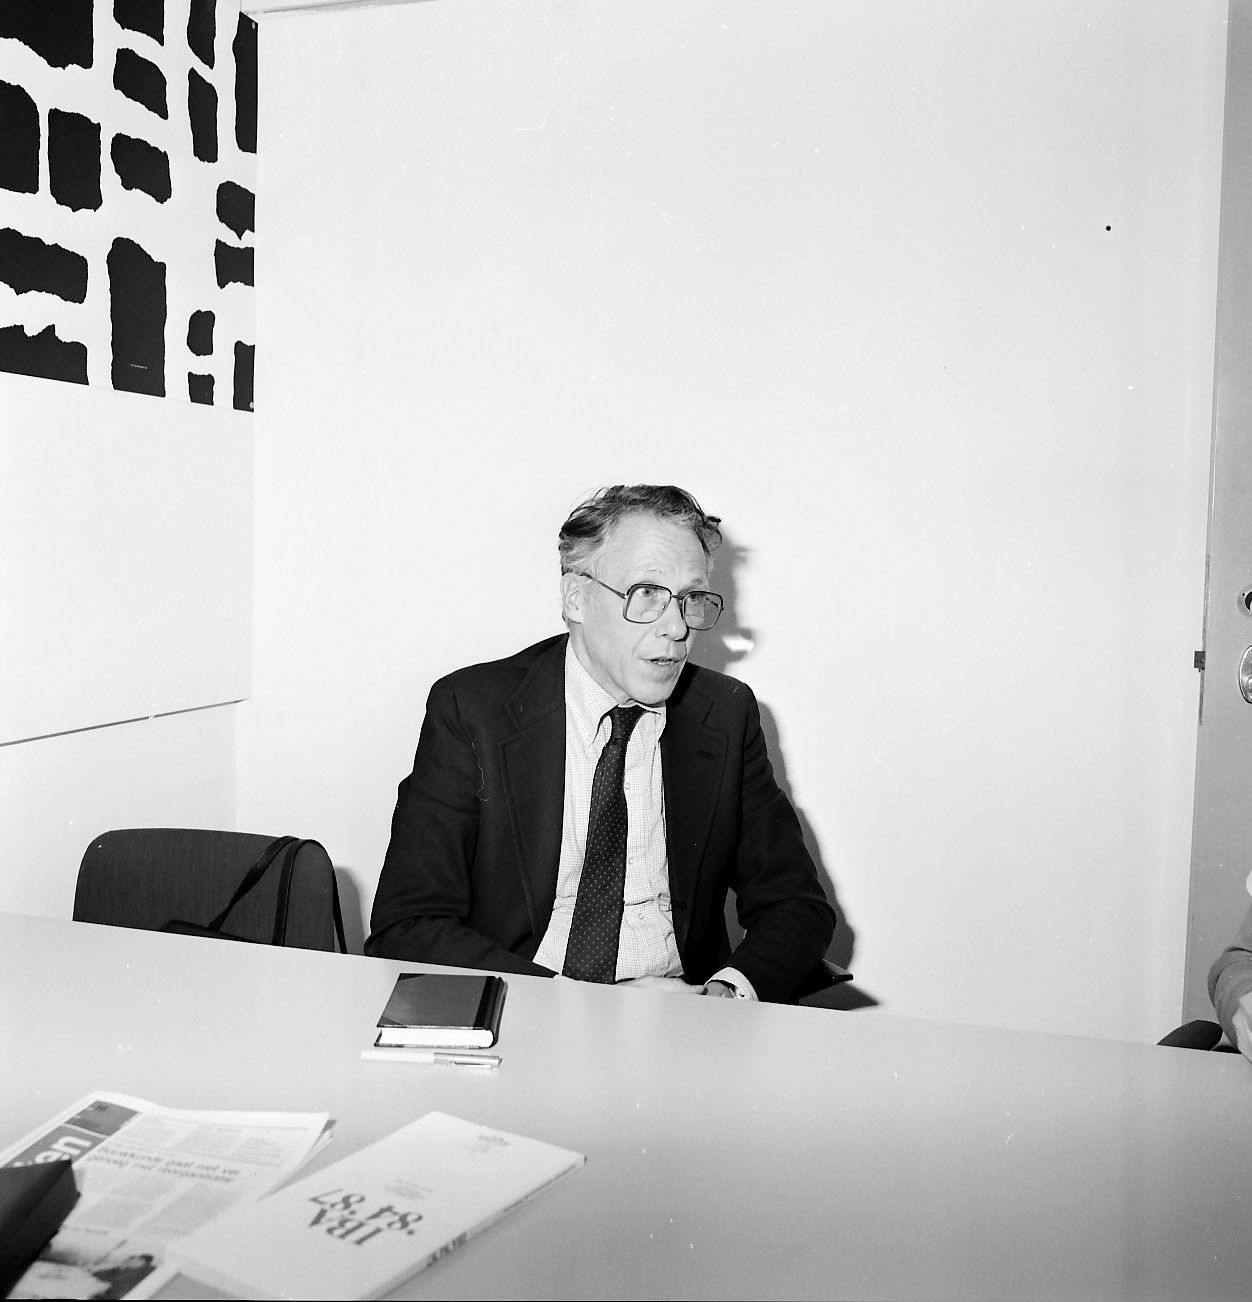 Portret van John Habraken in zwart/wit, zittend achter een bureau in een werkkamer, mogelijk op de Universiteit van Eindhoven.